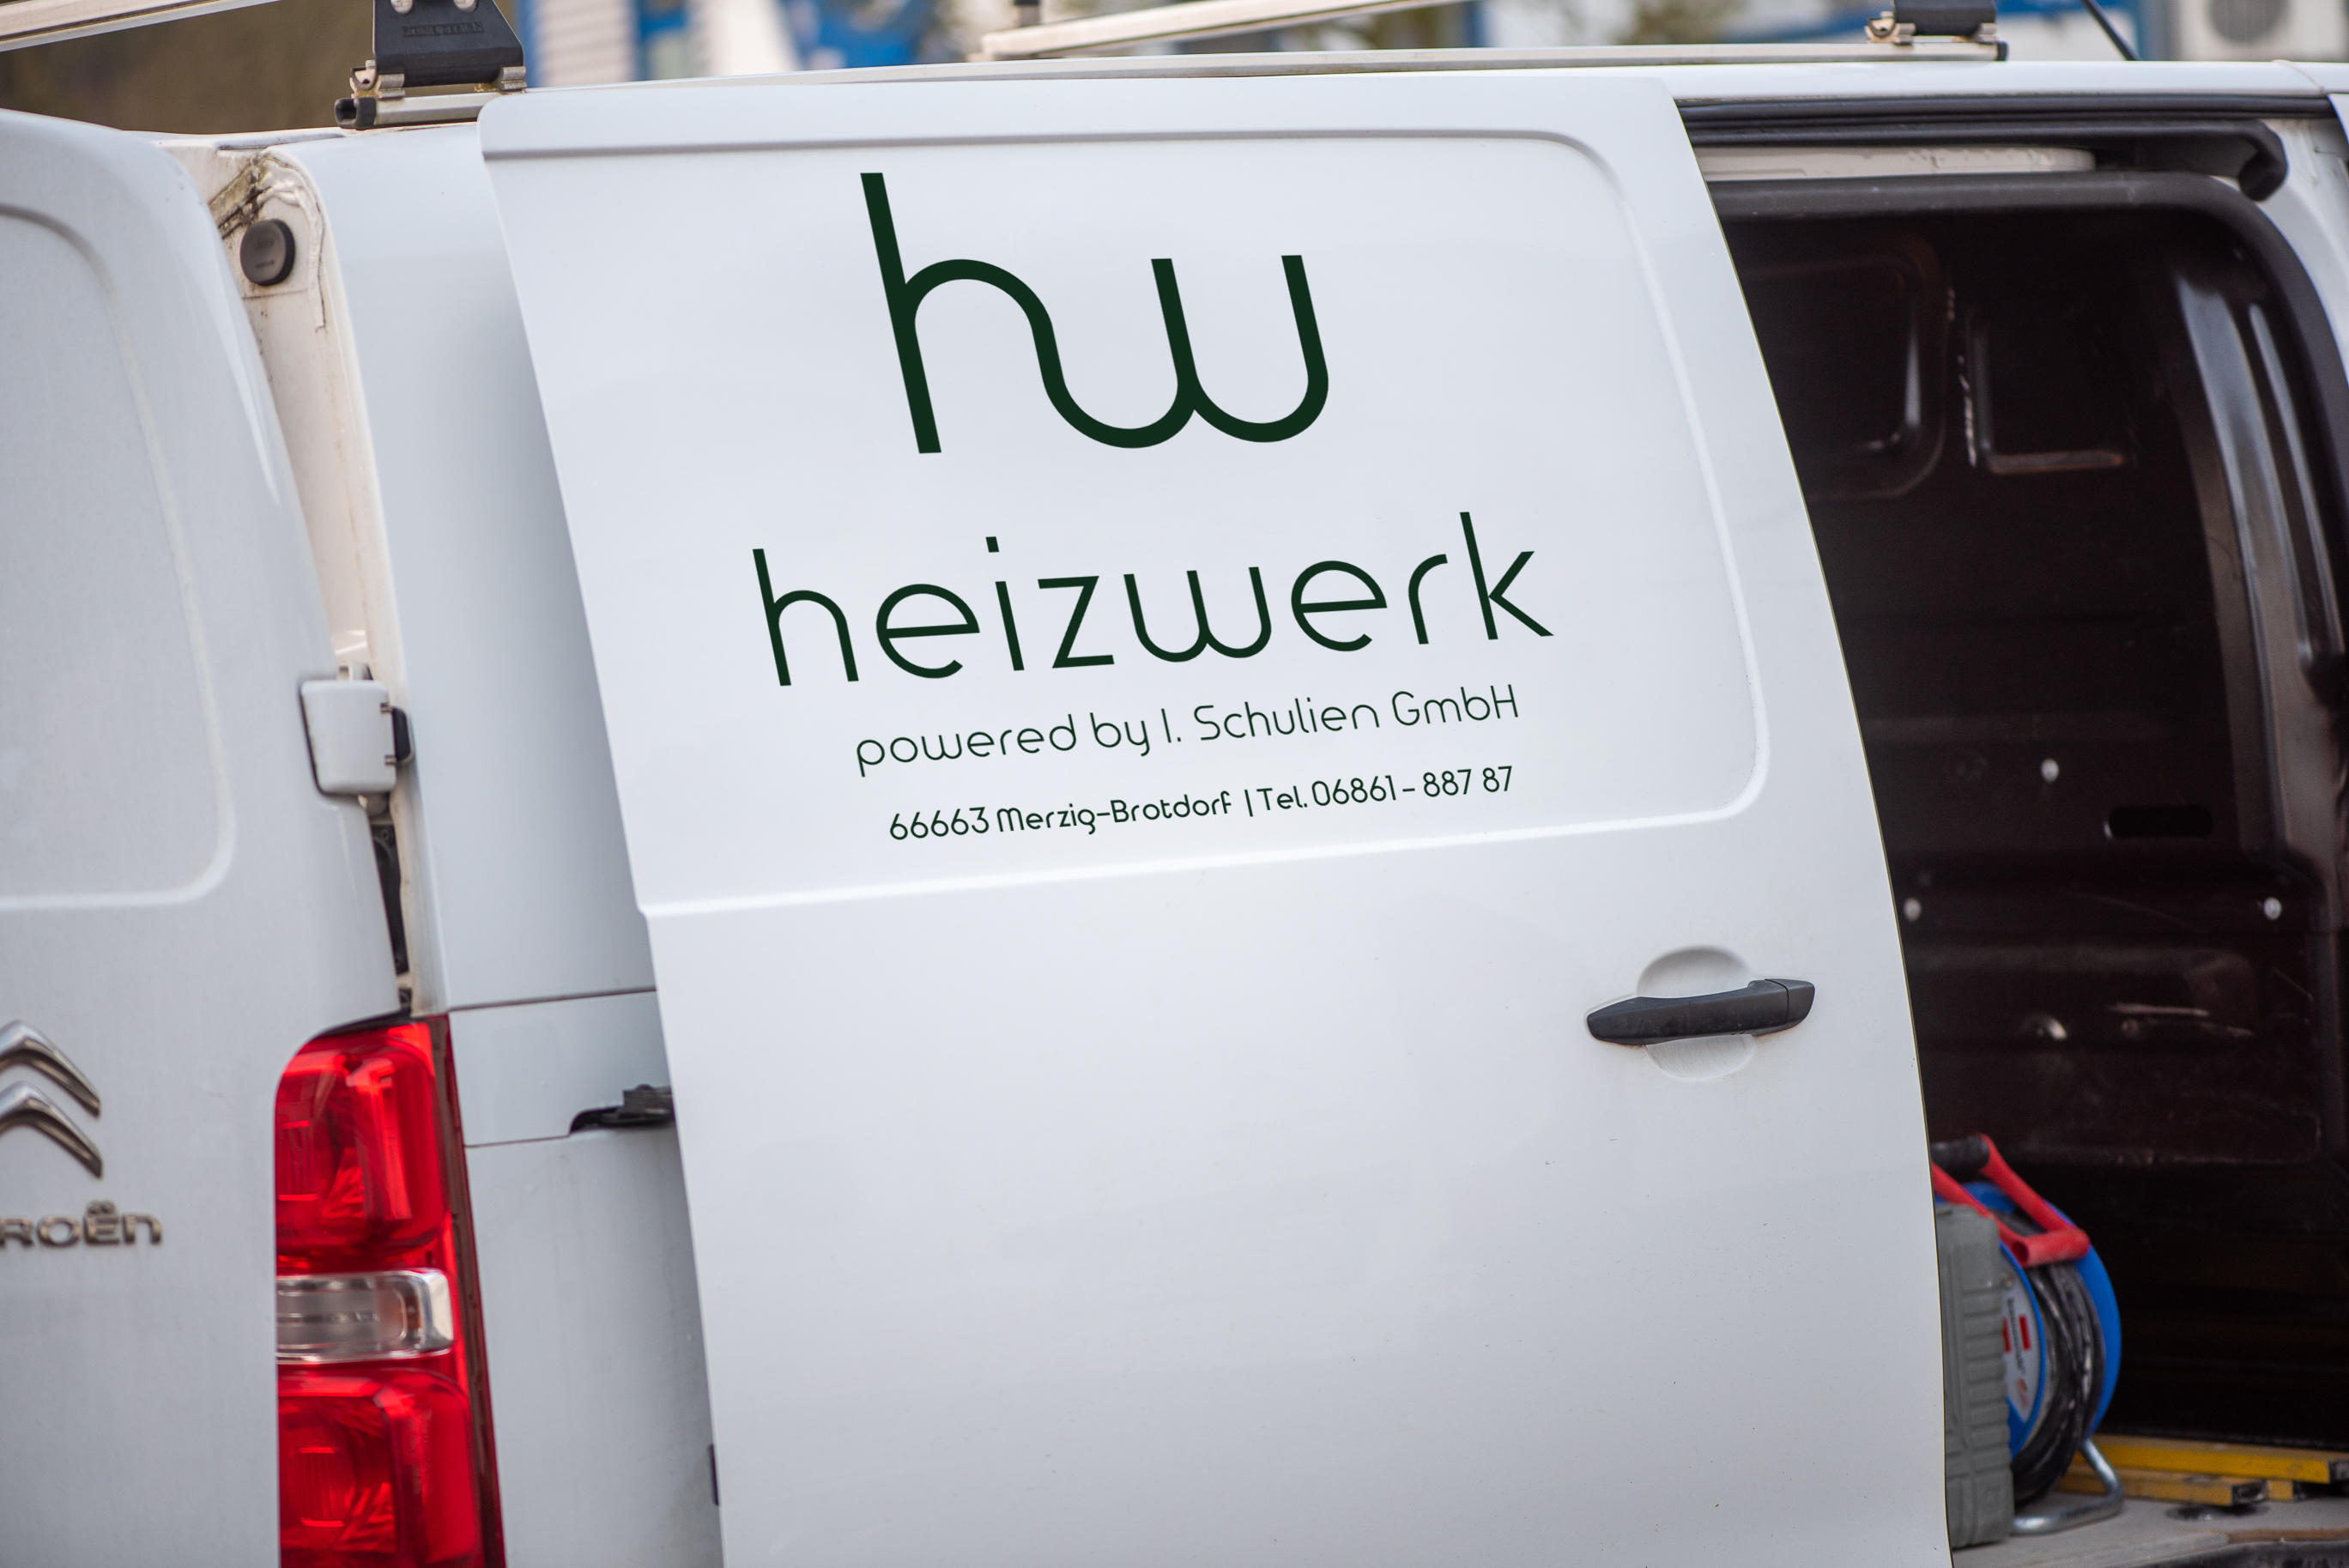 Bilder Heizwerk powered by I. Schulien GmbH